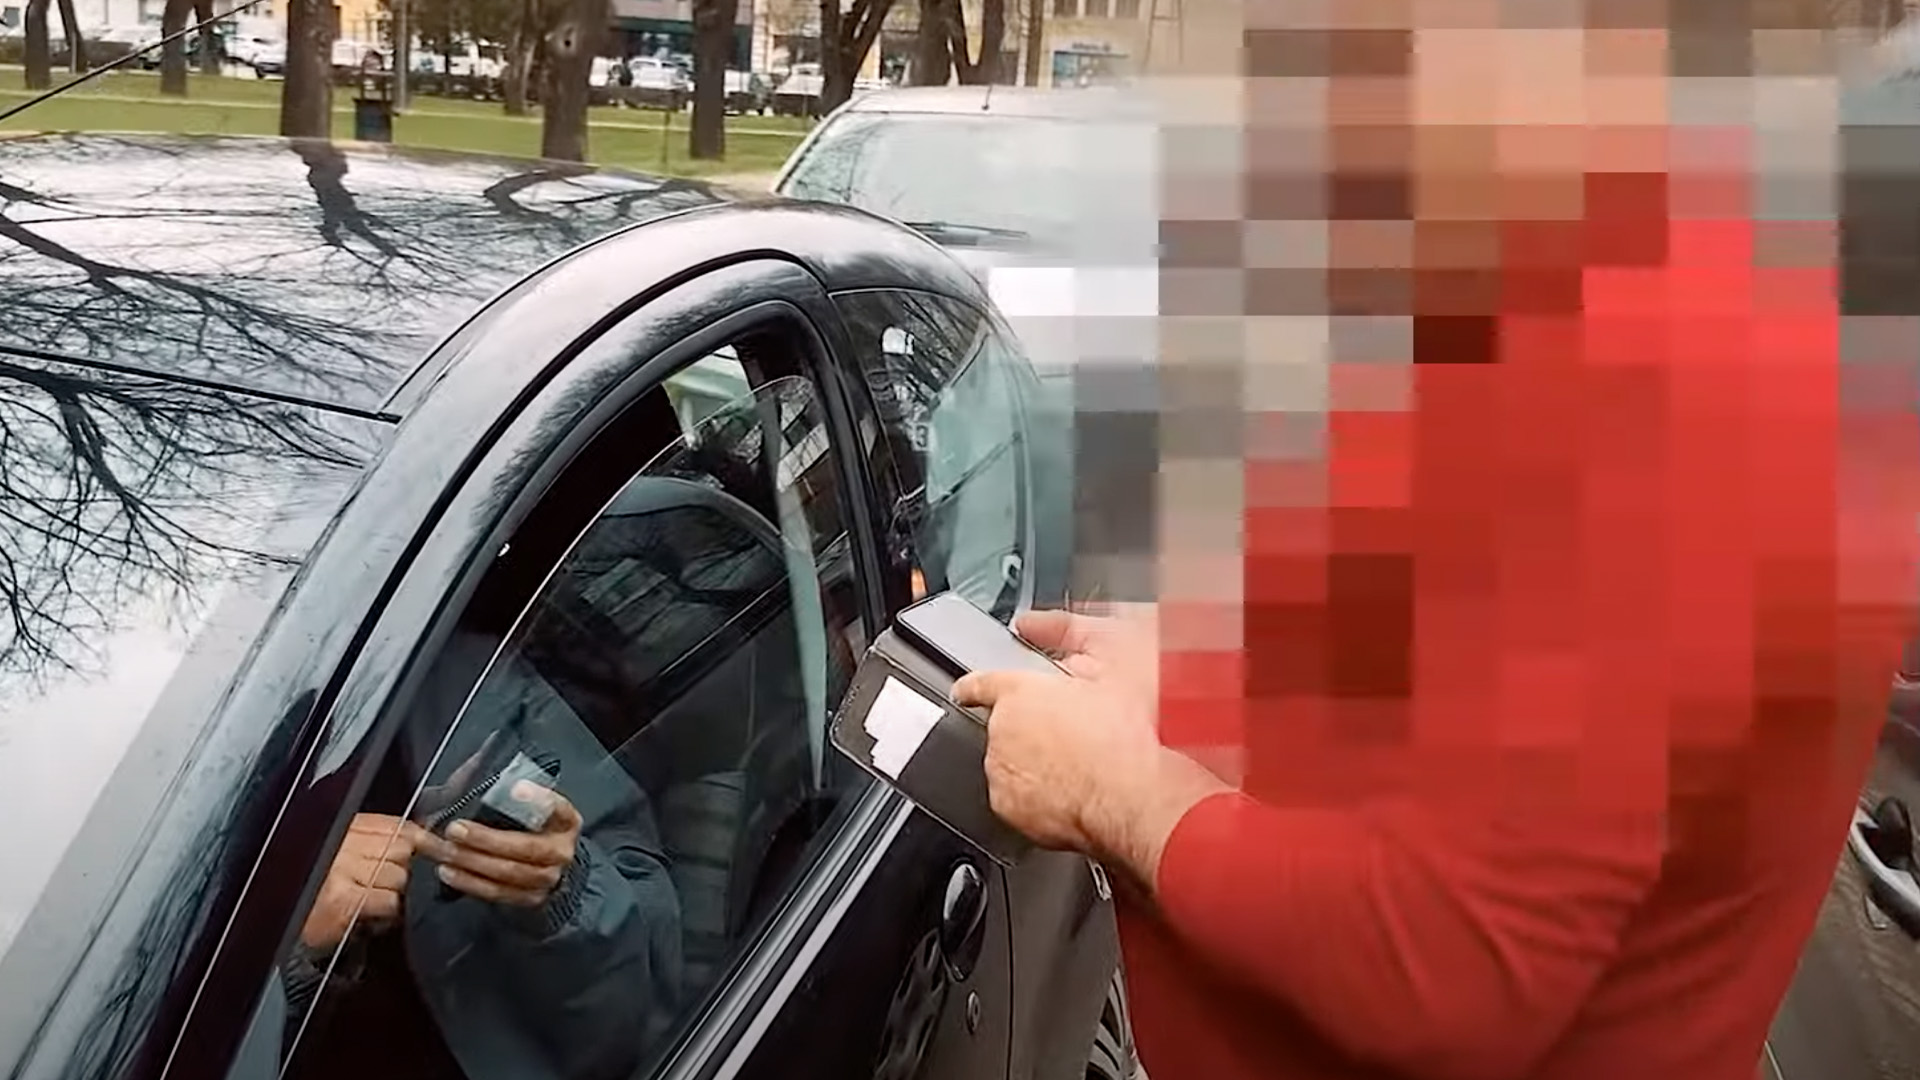 Benny Hill-szerű videón, ahogy a néma K. Endre beletolat újságírók autójába, majd a magyart törő barátja agresszíven fellép az érdekében